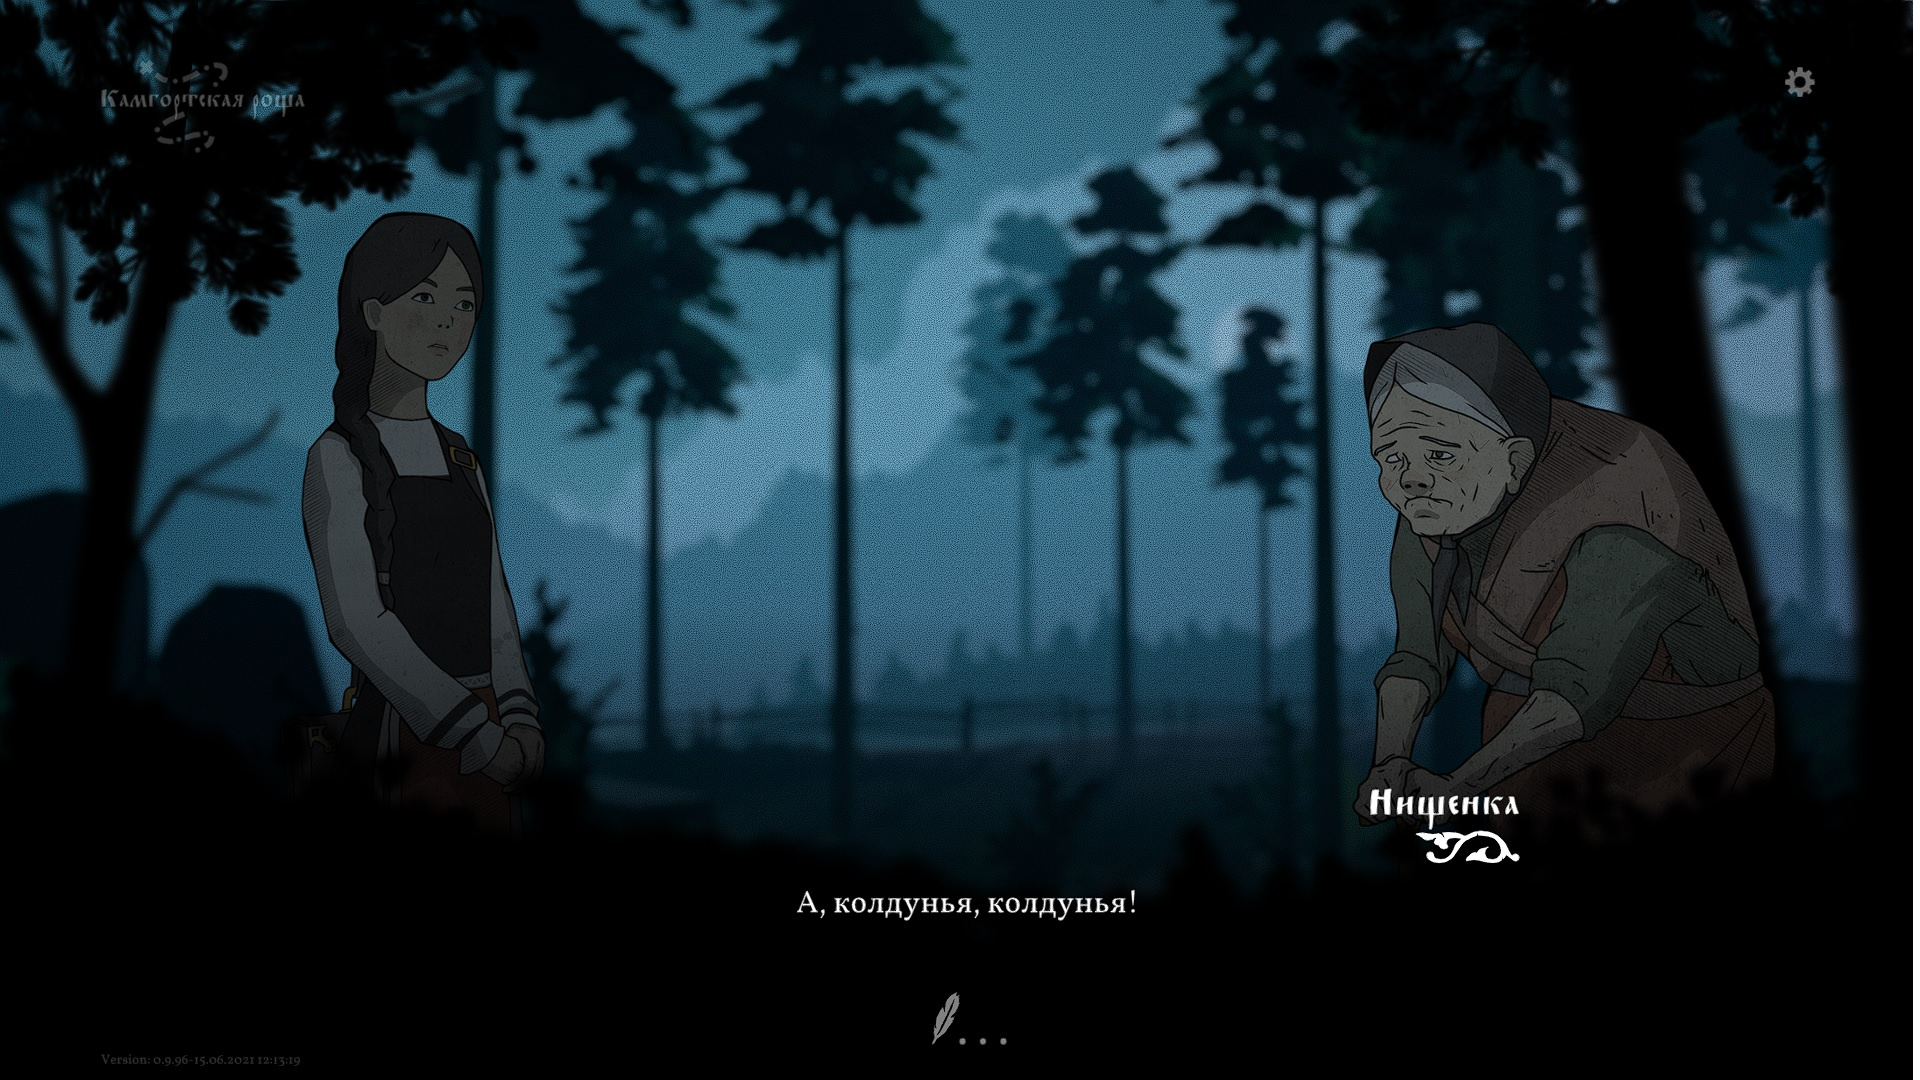 Главная героиня игры — девушка Василиса, которая пытается вернуть жениха с того света